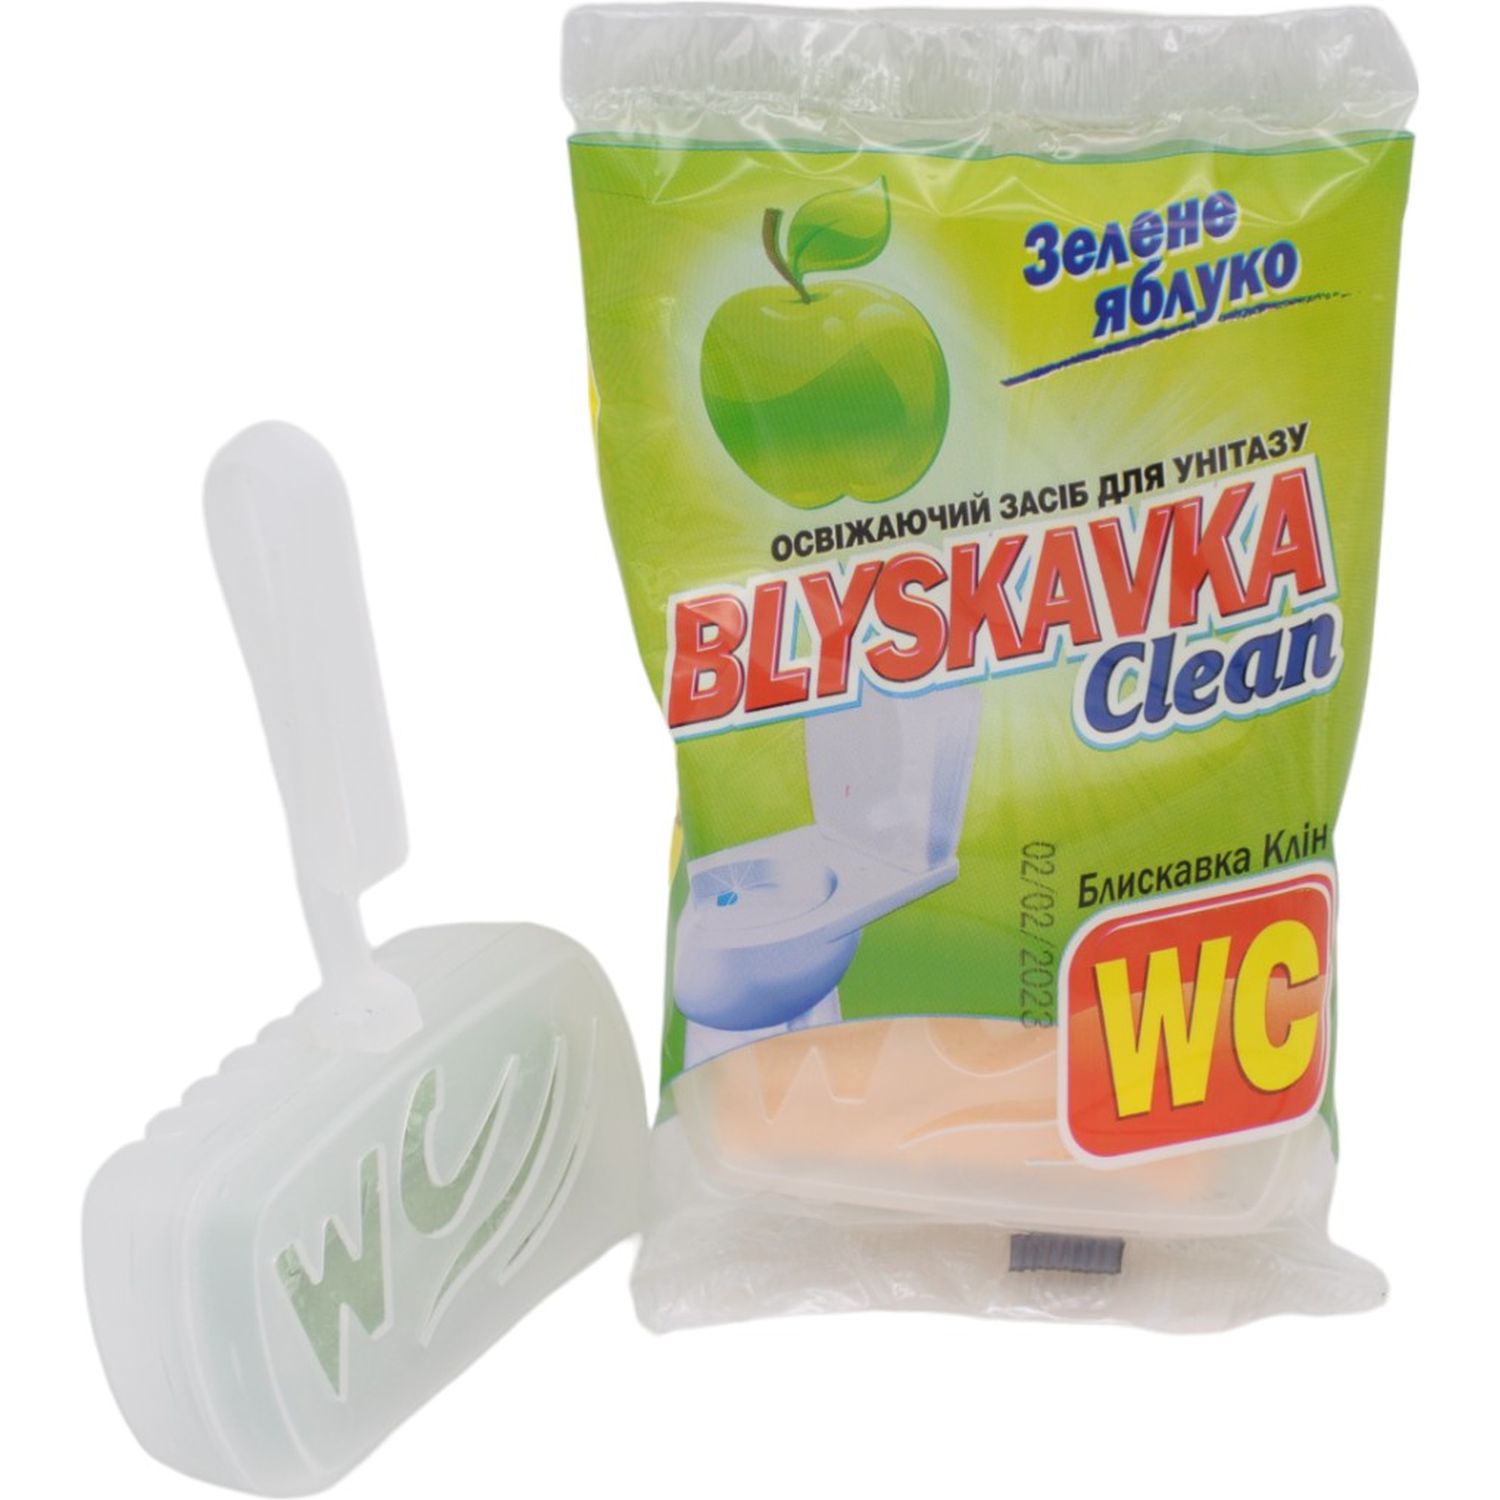 Освежающее средство для унитаза Blyskavka Clean Зеленое яблоко - фото 3